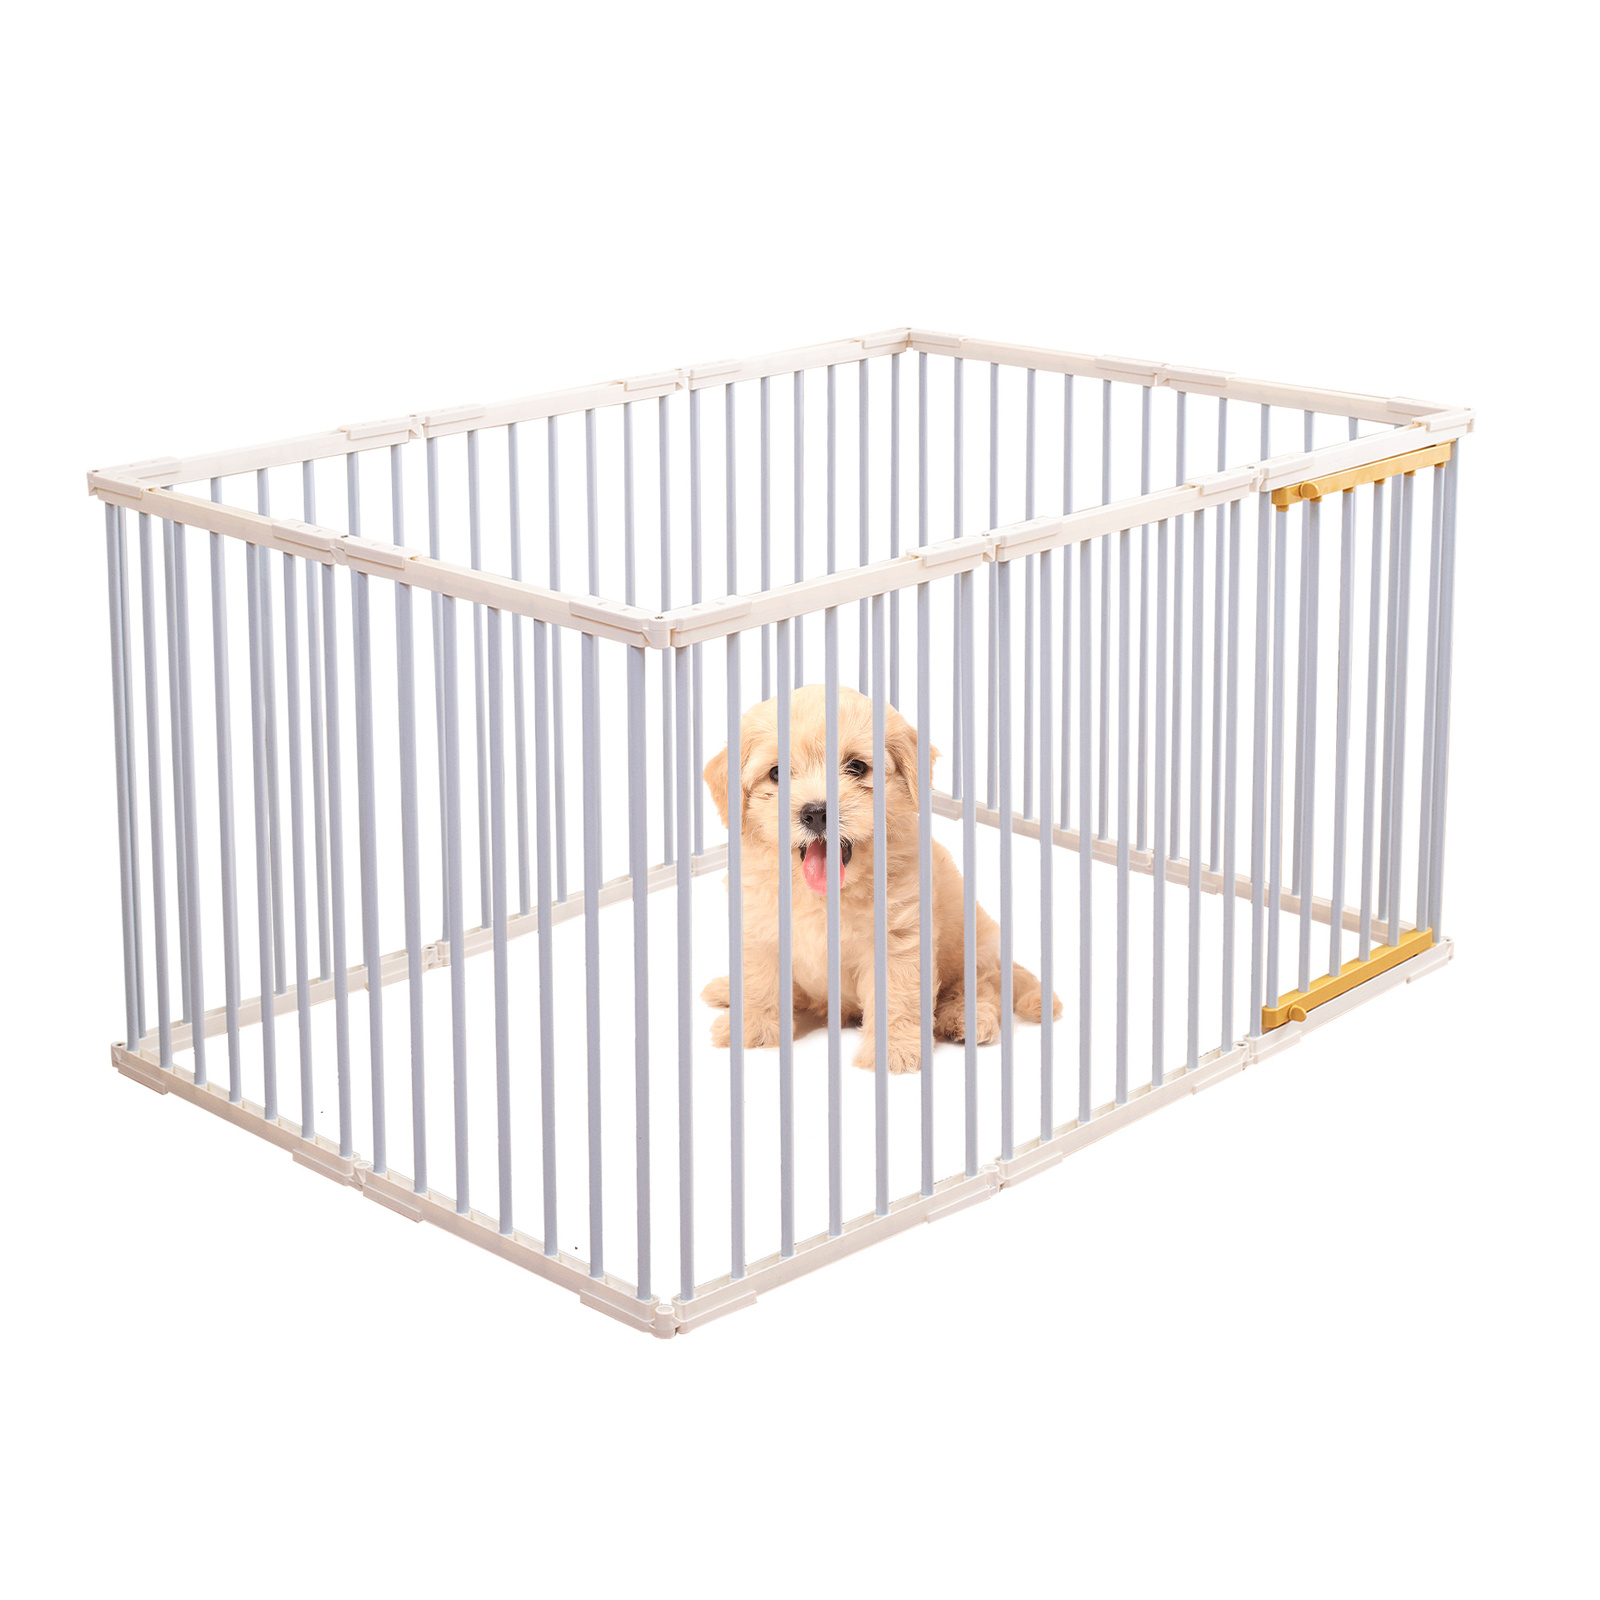 Portable Pet Dog Playpen Enclosure Cage 10 Panels